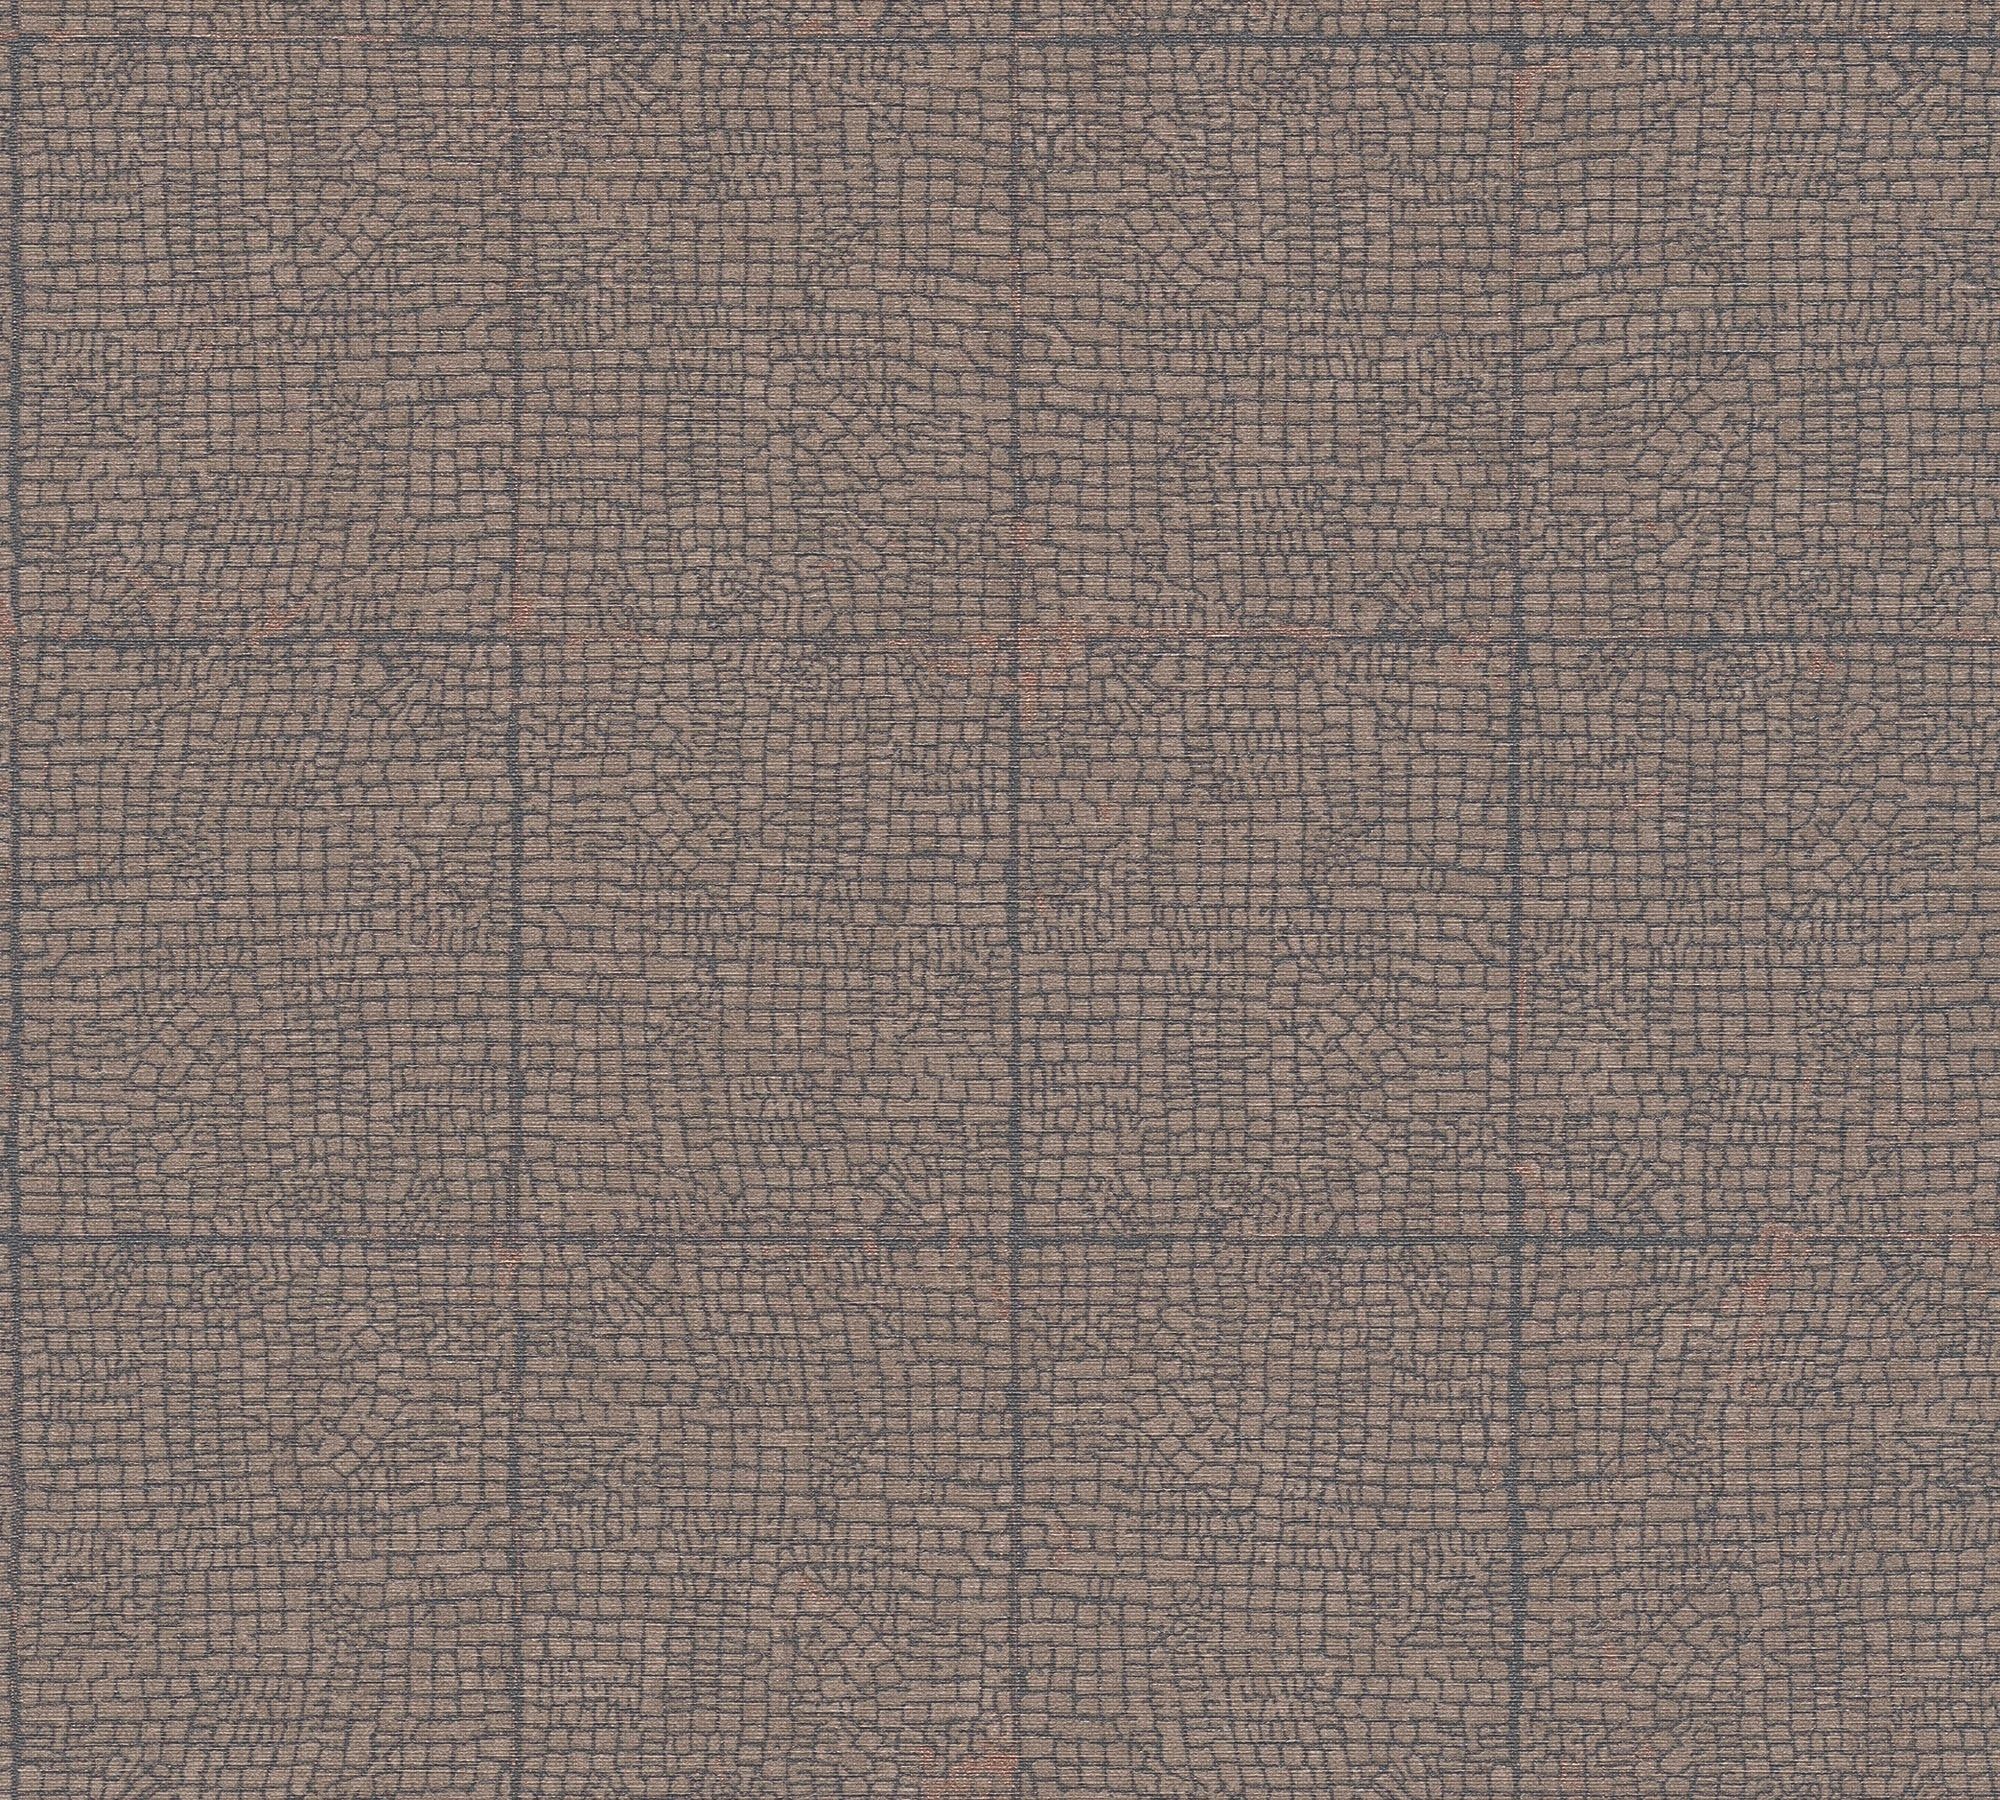 Moderne Desert Geometrisch Tapete strukturiert, Création A.S. grafisch, Vliestapete living walls braun/grau geometrisch, Lodge, Motiv,